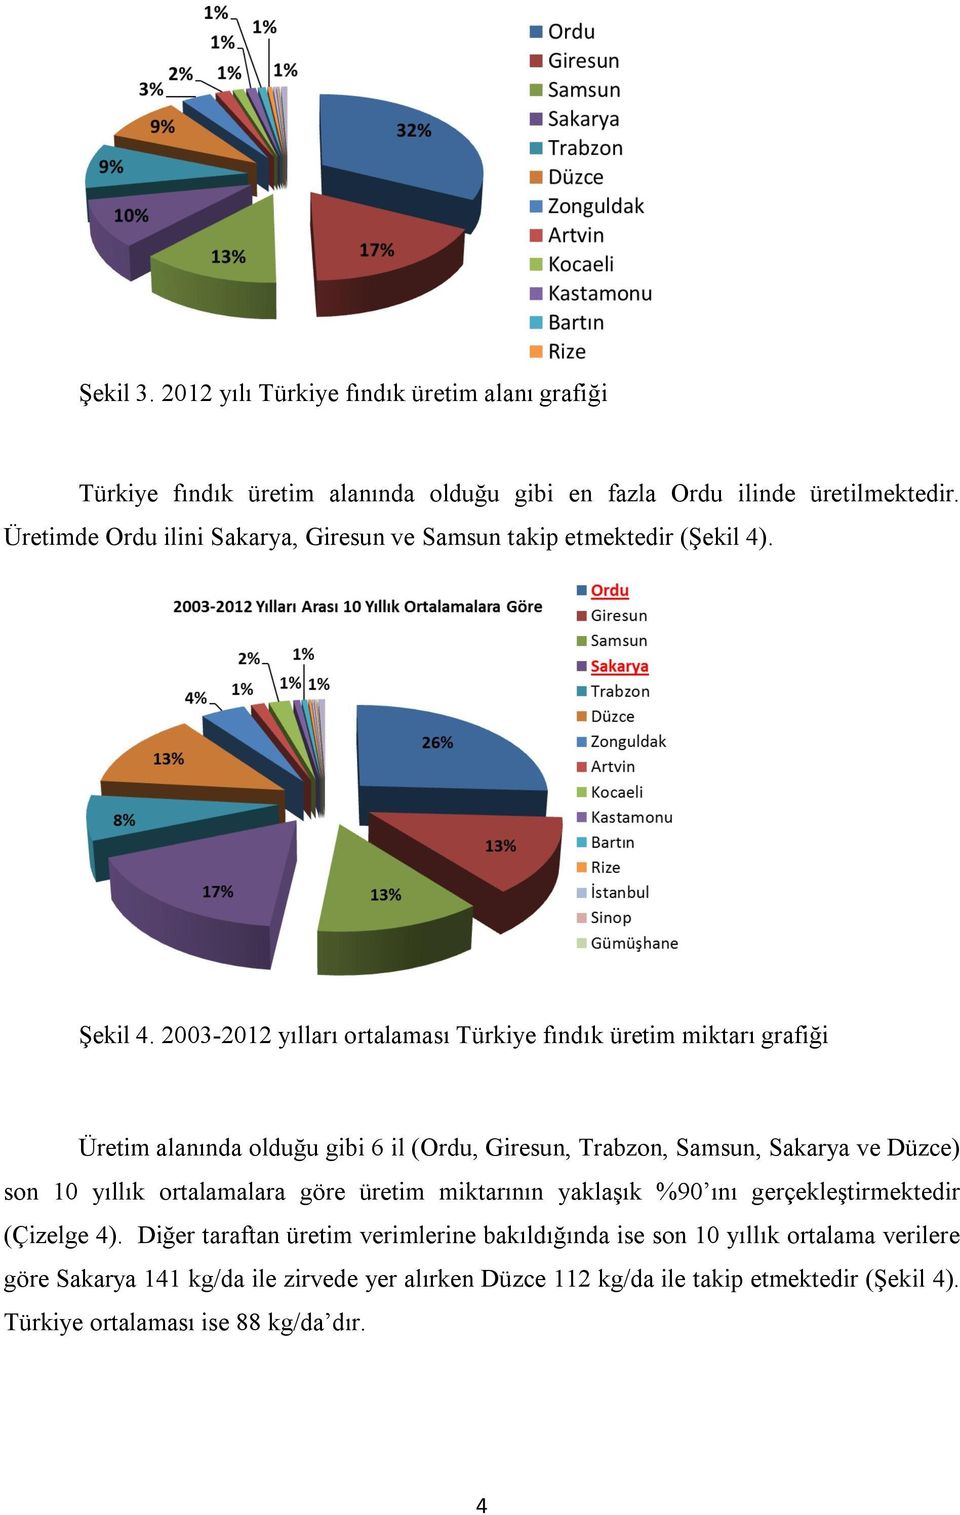 2003-2012 yılları ortalaması Türkiye fındık üretim miktarı grafiği Üretim alanında olduğu gibi 6 il (Ordu, Giresun, Trabzon, Samsun, Sakarya ve Düzce) son 10 yıllık